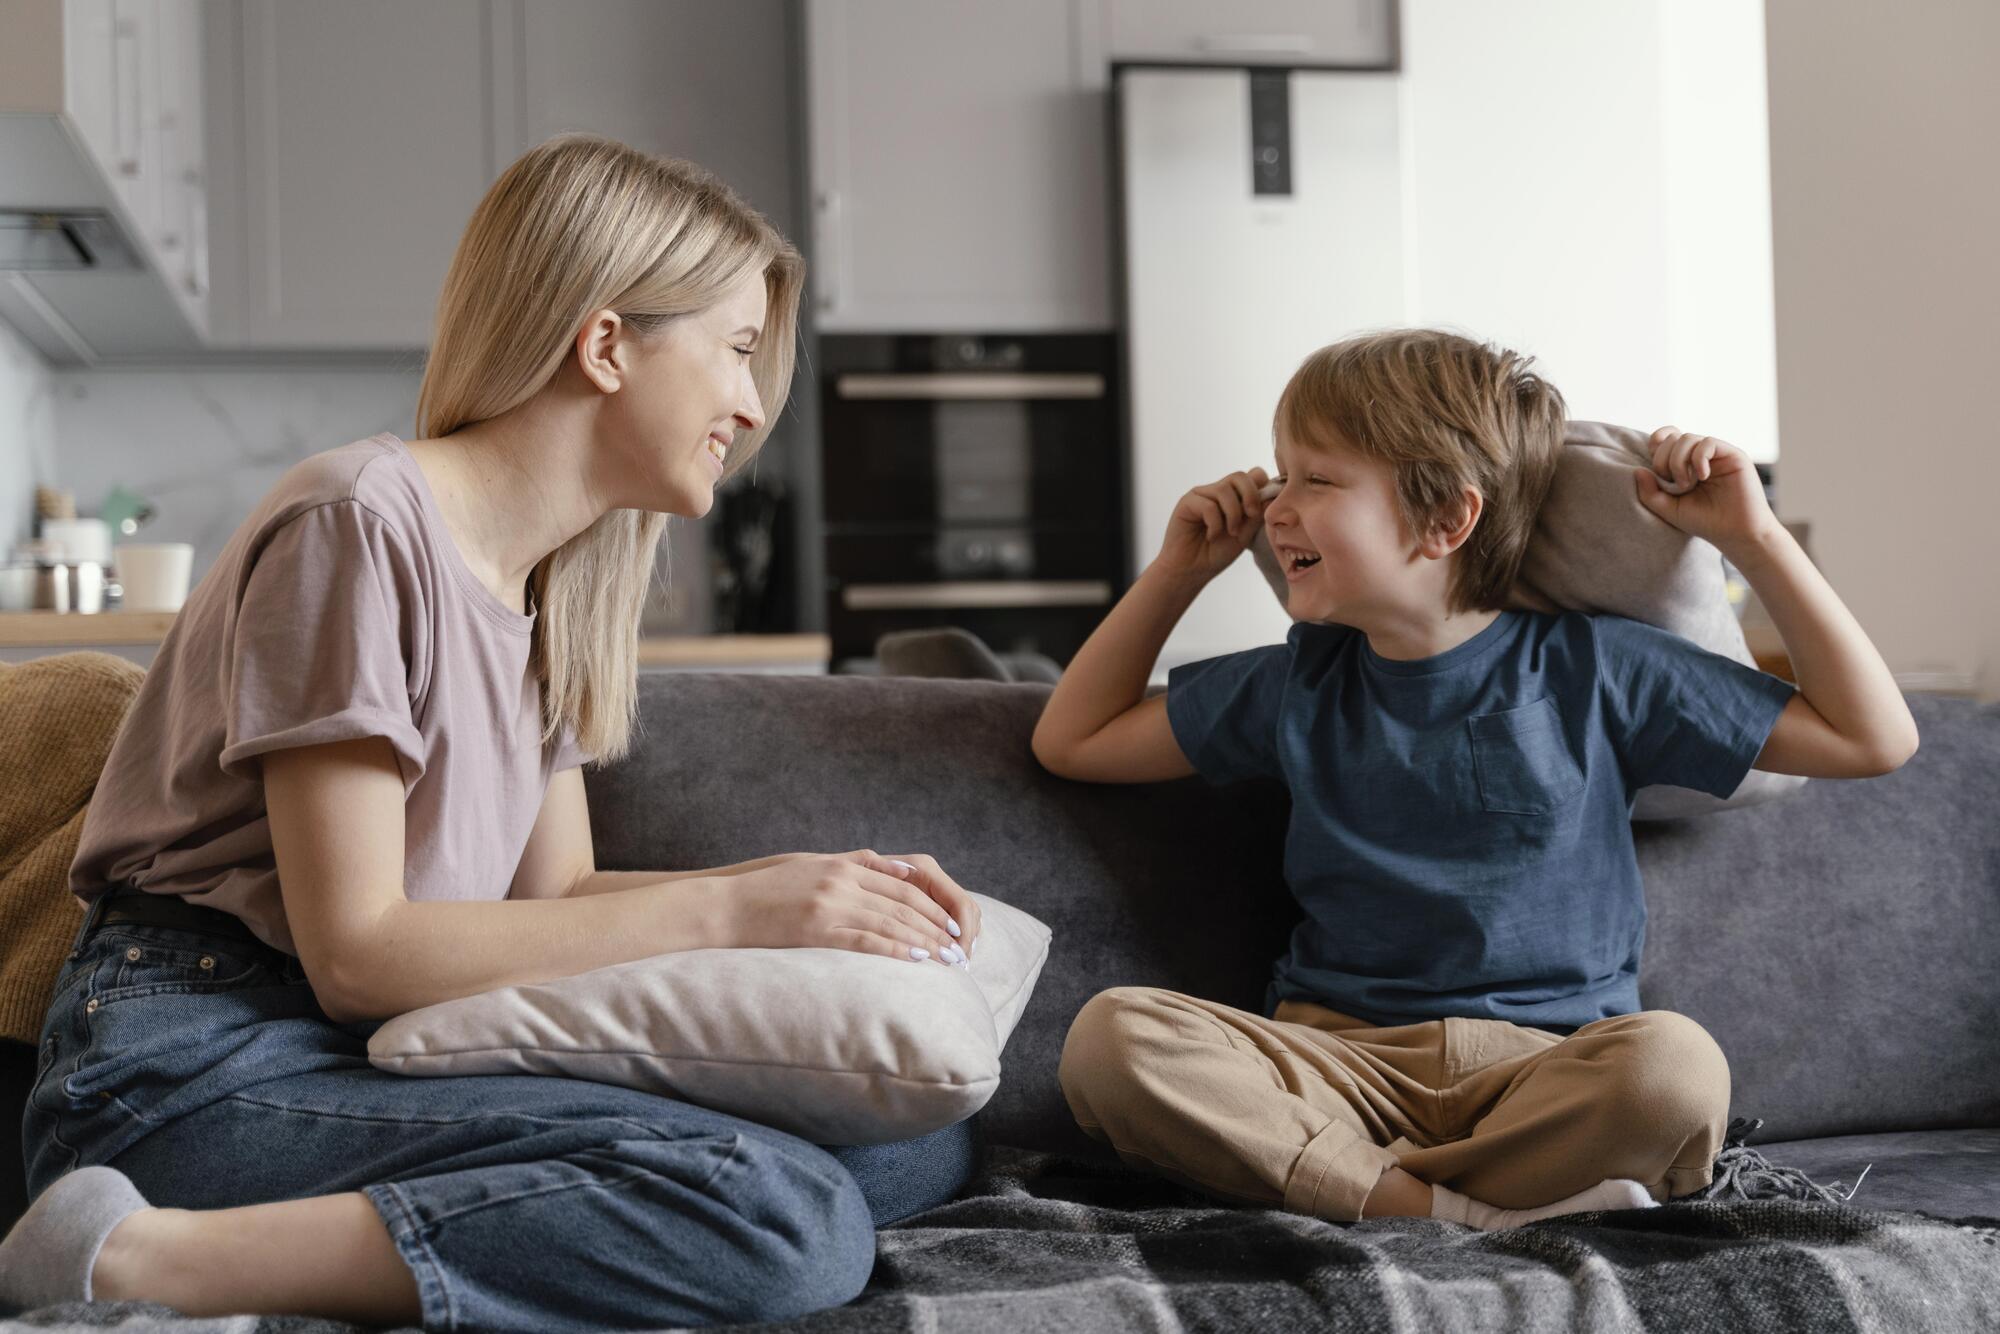 Як перестати кричати на дитину: 4 поради батькам, які не можуть себе стримати